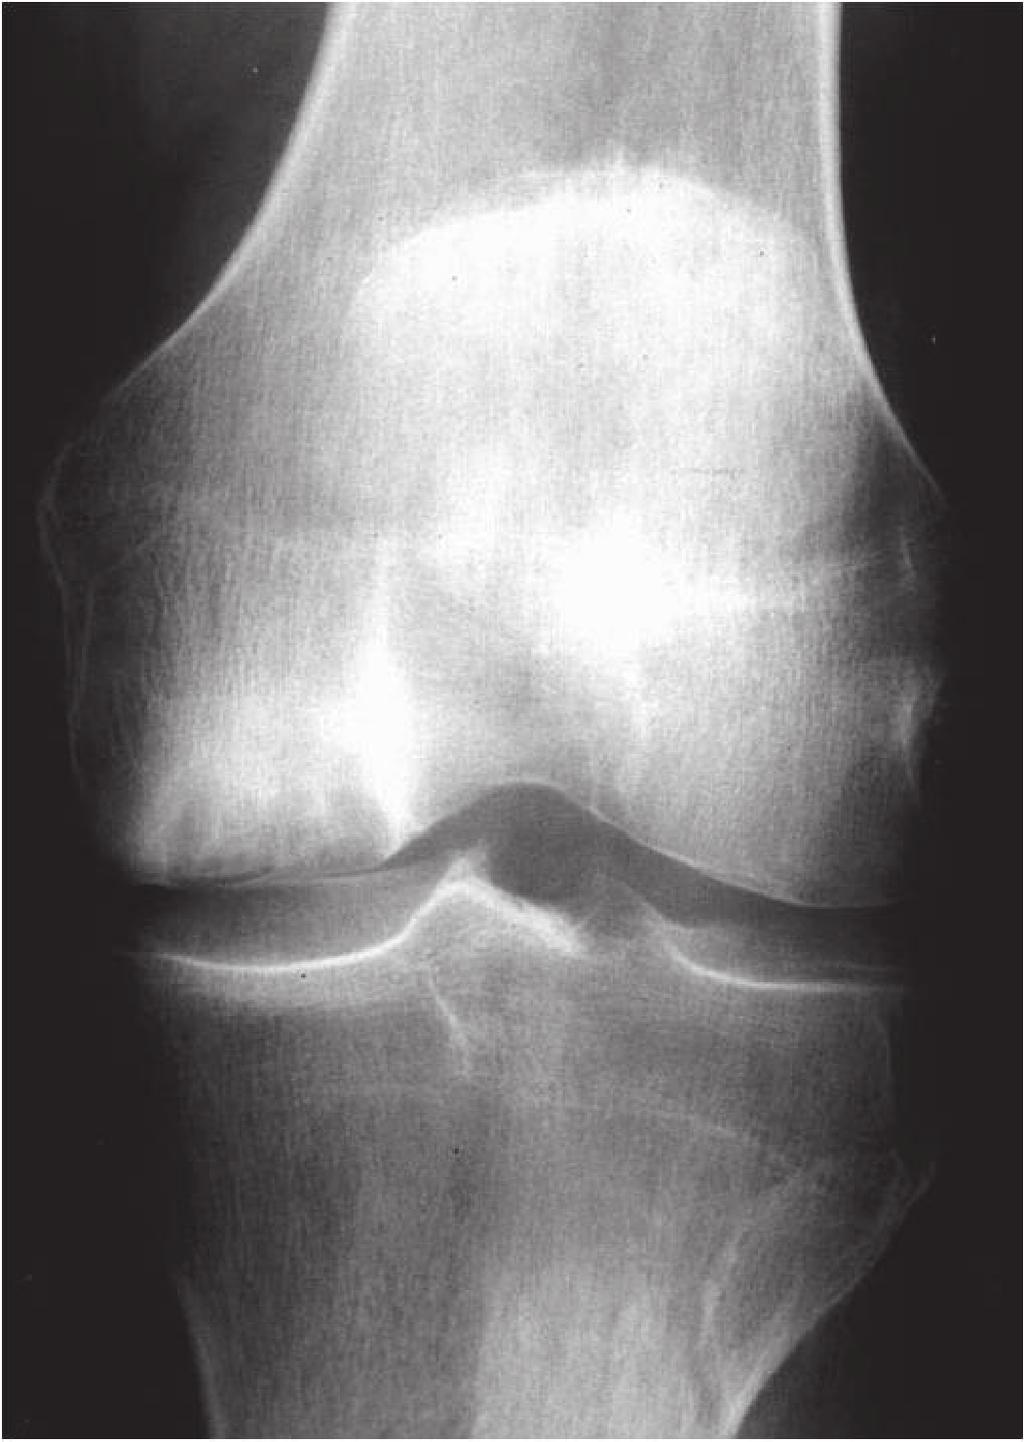 A RM demonstra edema ósseo e em alguns casos há sinais de traço de fratura (figura 4), que é favorável à etiologia traumática da OIJ (6).